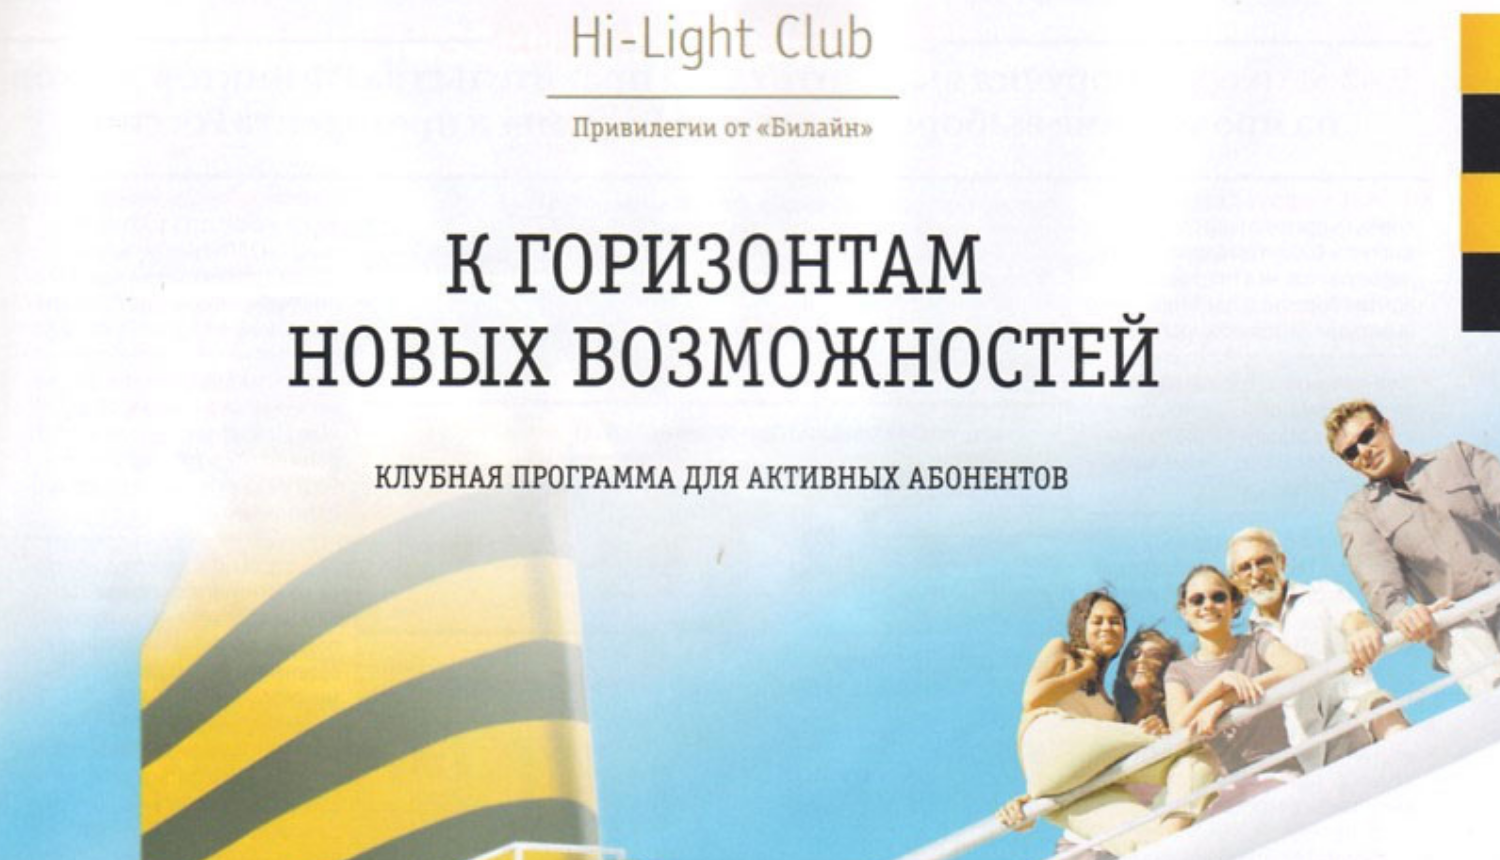 Программа привилегий " Hi-Light Club" от билайн